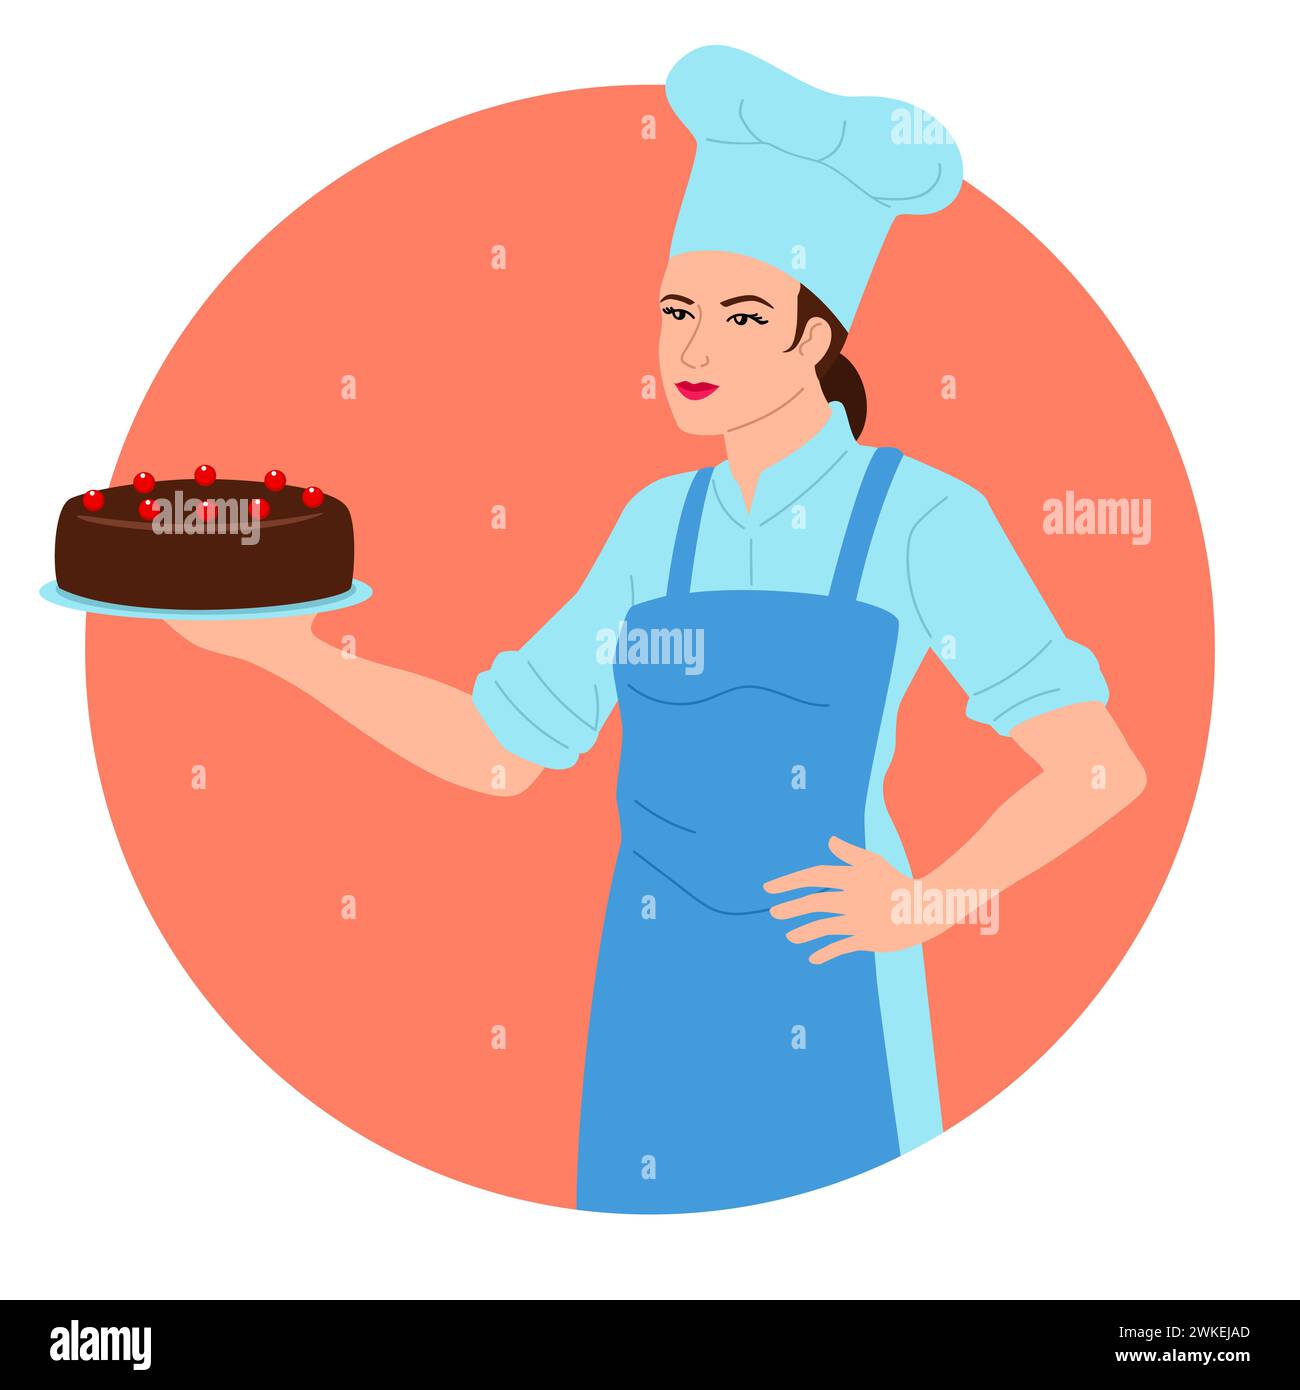 Clip art d'une femme chef tenant fièrement un gâteau au chocolat. Cette image est parfaite pour les publicités de boulangerie, les recettes de desserts et les blogs de cuisine Illustration de Vecteur